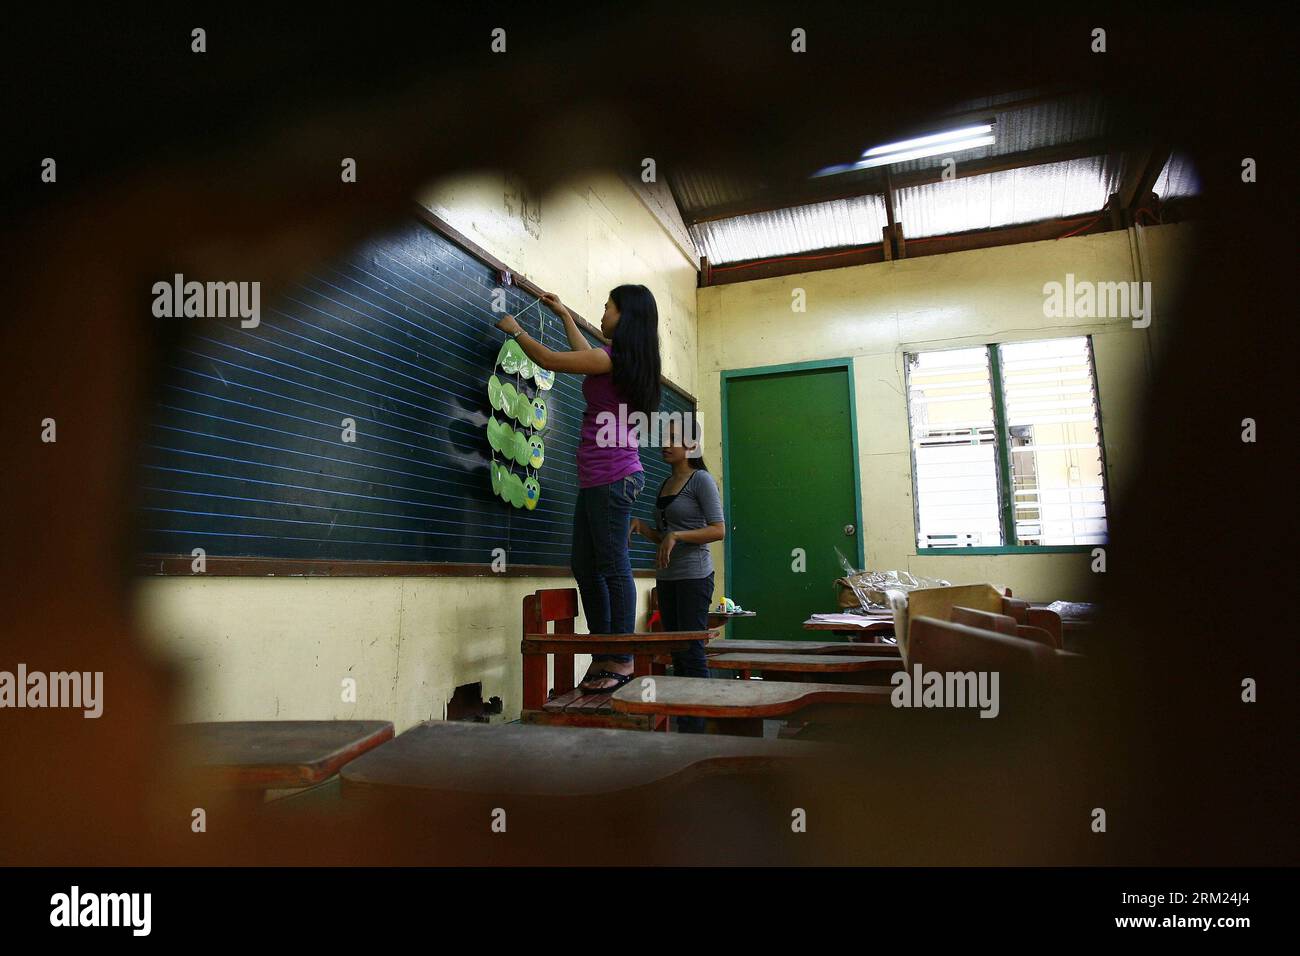 Bildnummer : 59689998 Datum : 24.05.2013 Copyright : imago/Xinhua (130524) -- QUEZON CITY, 24 mai 2013 (Xinhua) -- les enseignants organisent une salle de classe pour l'année scolaire à venir à Bagong Silangan Elementary School, Quezon City, Philippines, 24 mai 2013. Le ministère de l'éducation (DepEd) des Philippines s'attend à ce qu'environ 23,8 millions d'élèves fréquentent des écoles primaires et secondaires publiques et privées dans tout le pays pour l'année scolaire 2013-2014 qui commence le 3 juin. (Xinhua/Rouelle Umali) PHILIPPINES-QUEZON CITY-SCHOOL YEAR PRÉPARATION PUBLICATIONxNOTxINxCHN xcb x0x 2013 quer 59 Banque D'Images